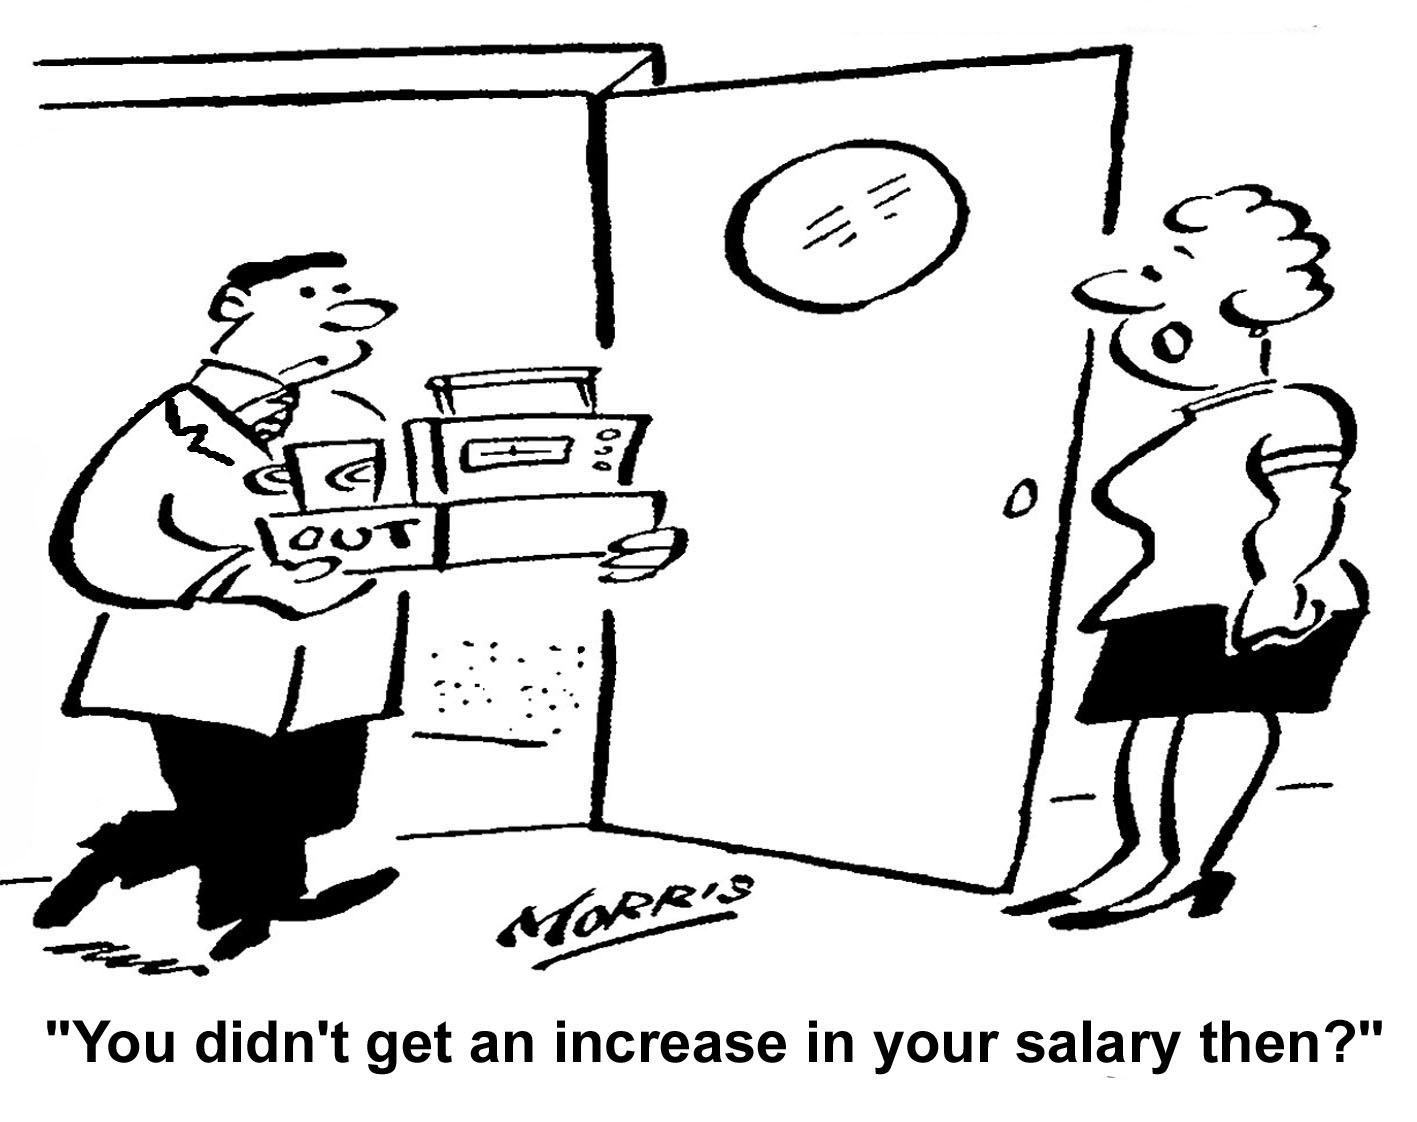 lost job no salary increase